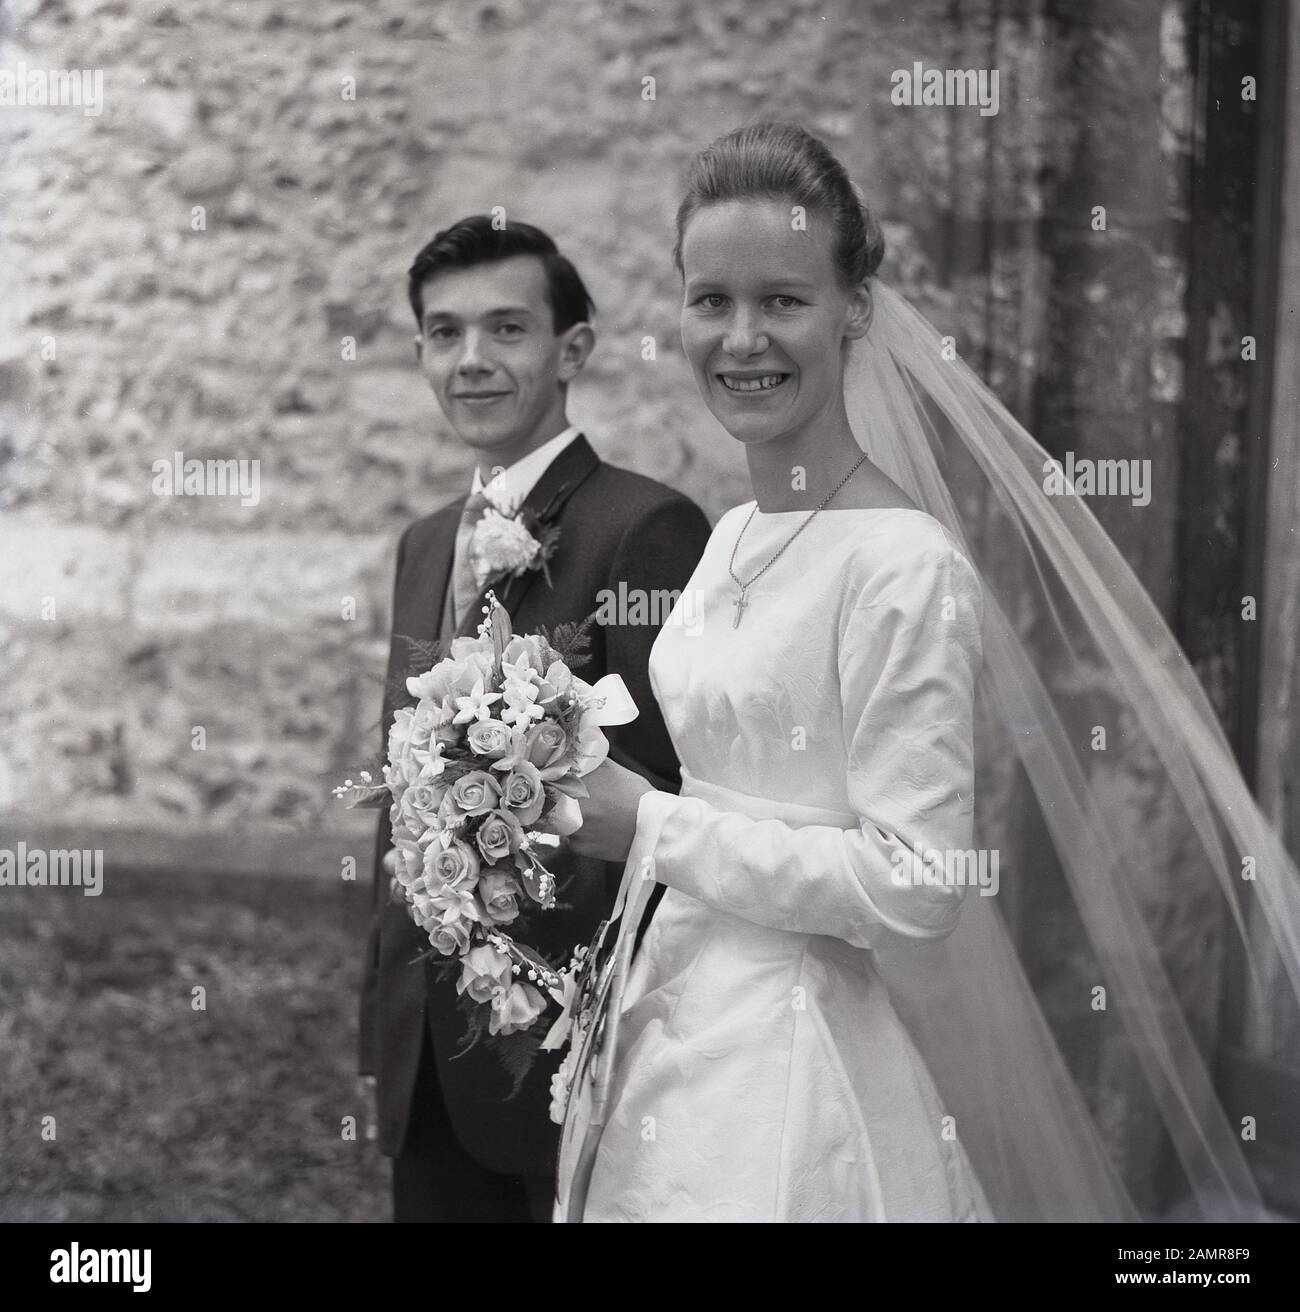 1960, pareja de bodas de adultos jóvenes, novia sonriente en su vestido de boda, con velo sosteniendo un ramo de flores fuera de una iglesia, Inglaterra, Reino Unido. Foto de stock